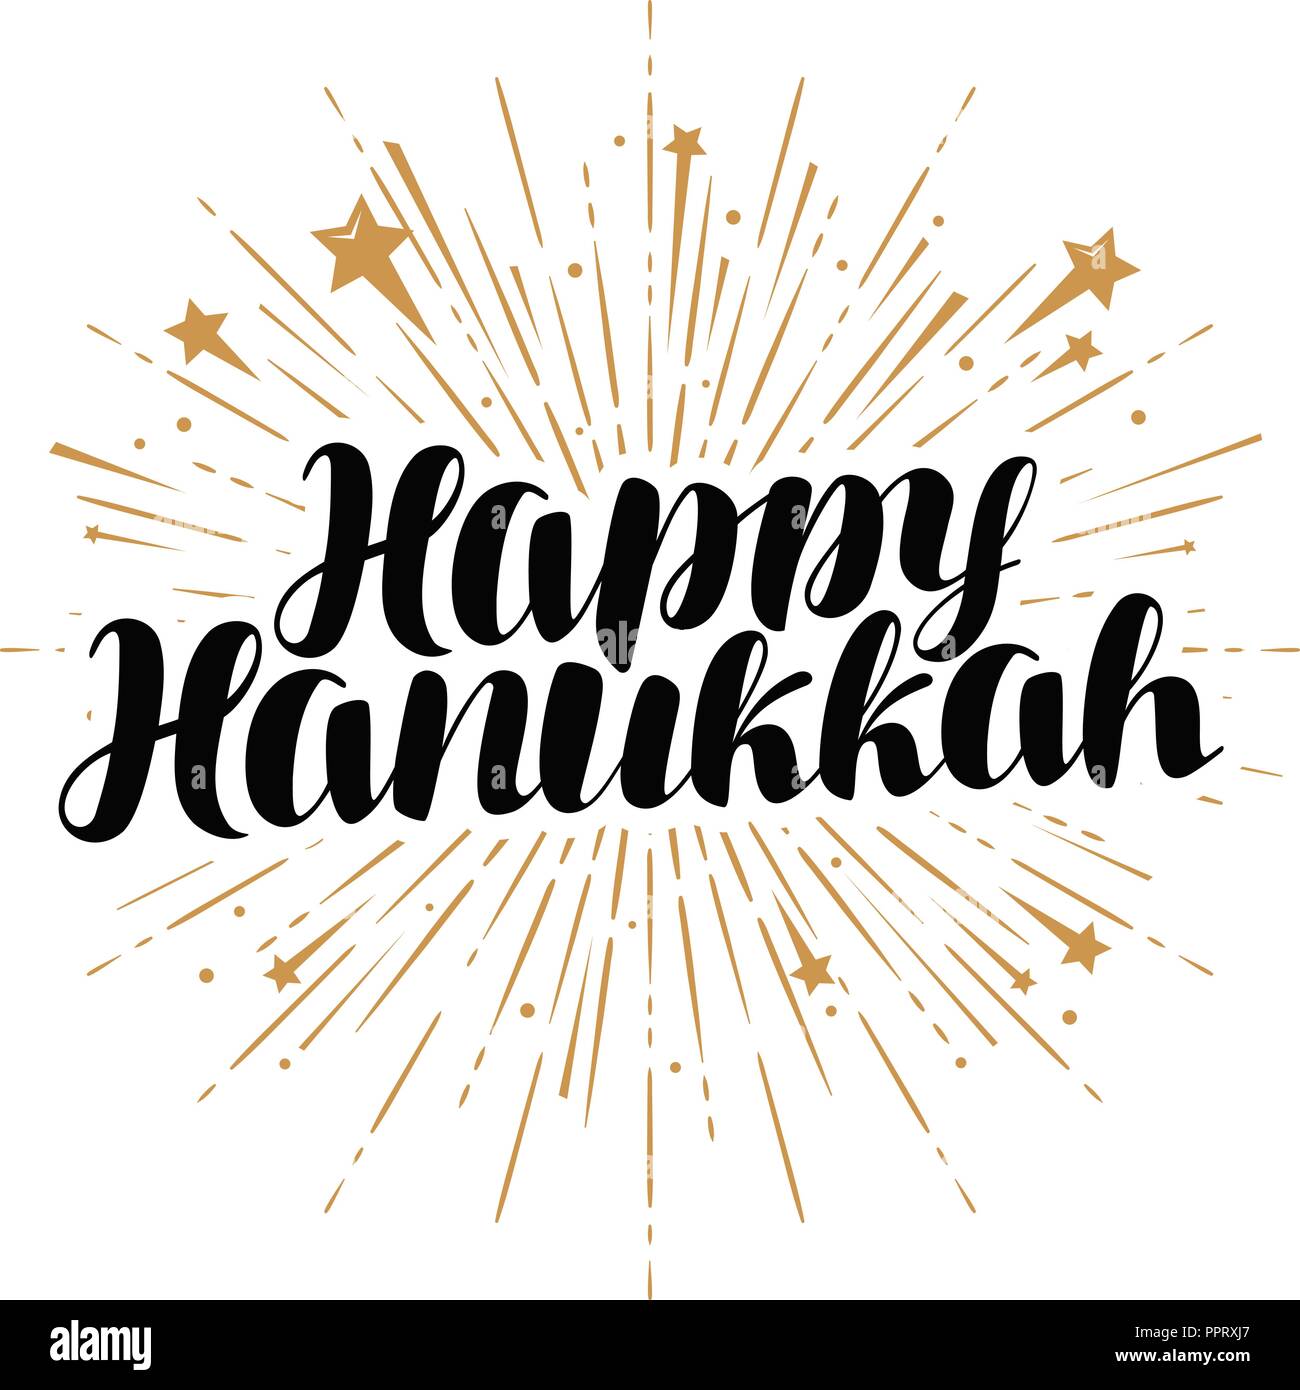 Happy Chanukka Grußkarte oder Banner. Jüdische Feiertag, handschriftliche Schriftzug Vektor Stock Vektor